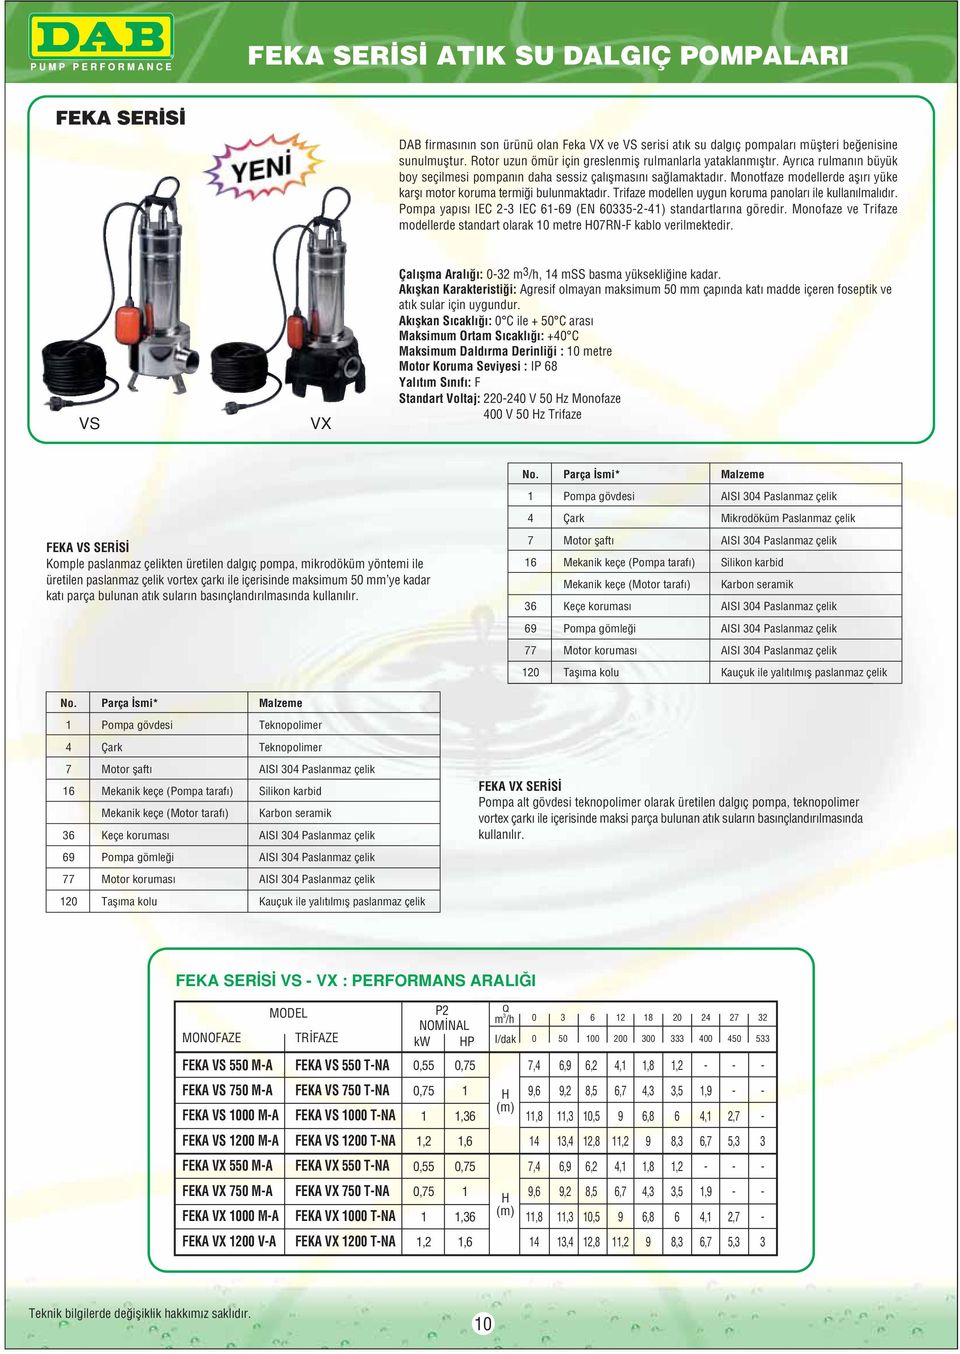 Monotfaze modellerde afl r yüke karfl motor koruma termi i bulunmaktad r. Trifaze modellen uygun koruma panolar ile kullan lmal d r. Pompa yap s IEC 2 IEC 9 (EN 52) standartlar na göredir.